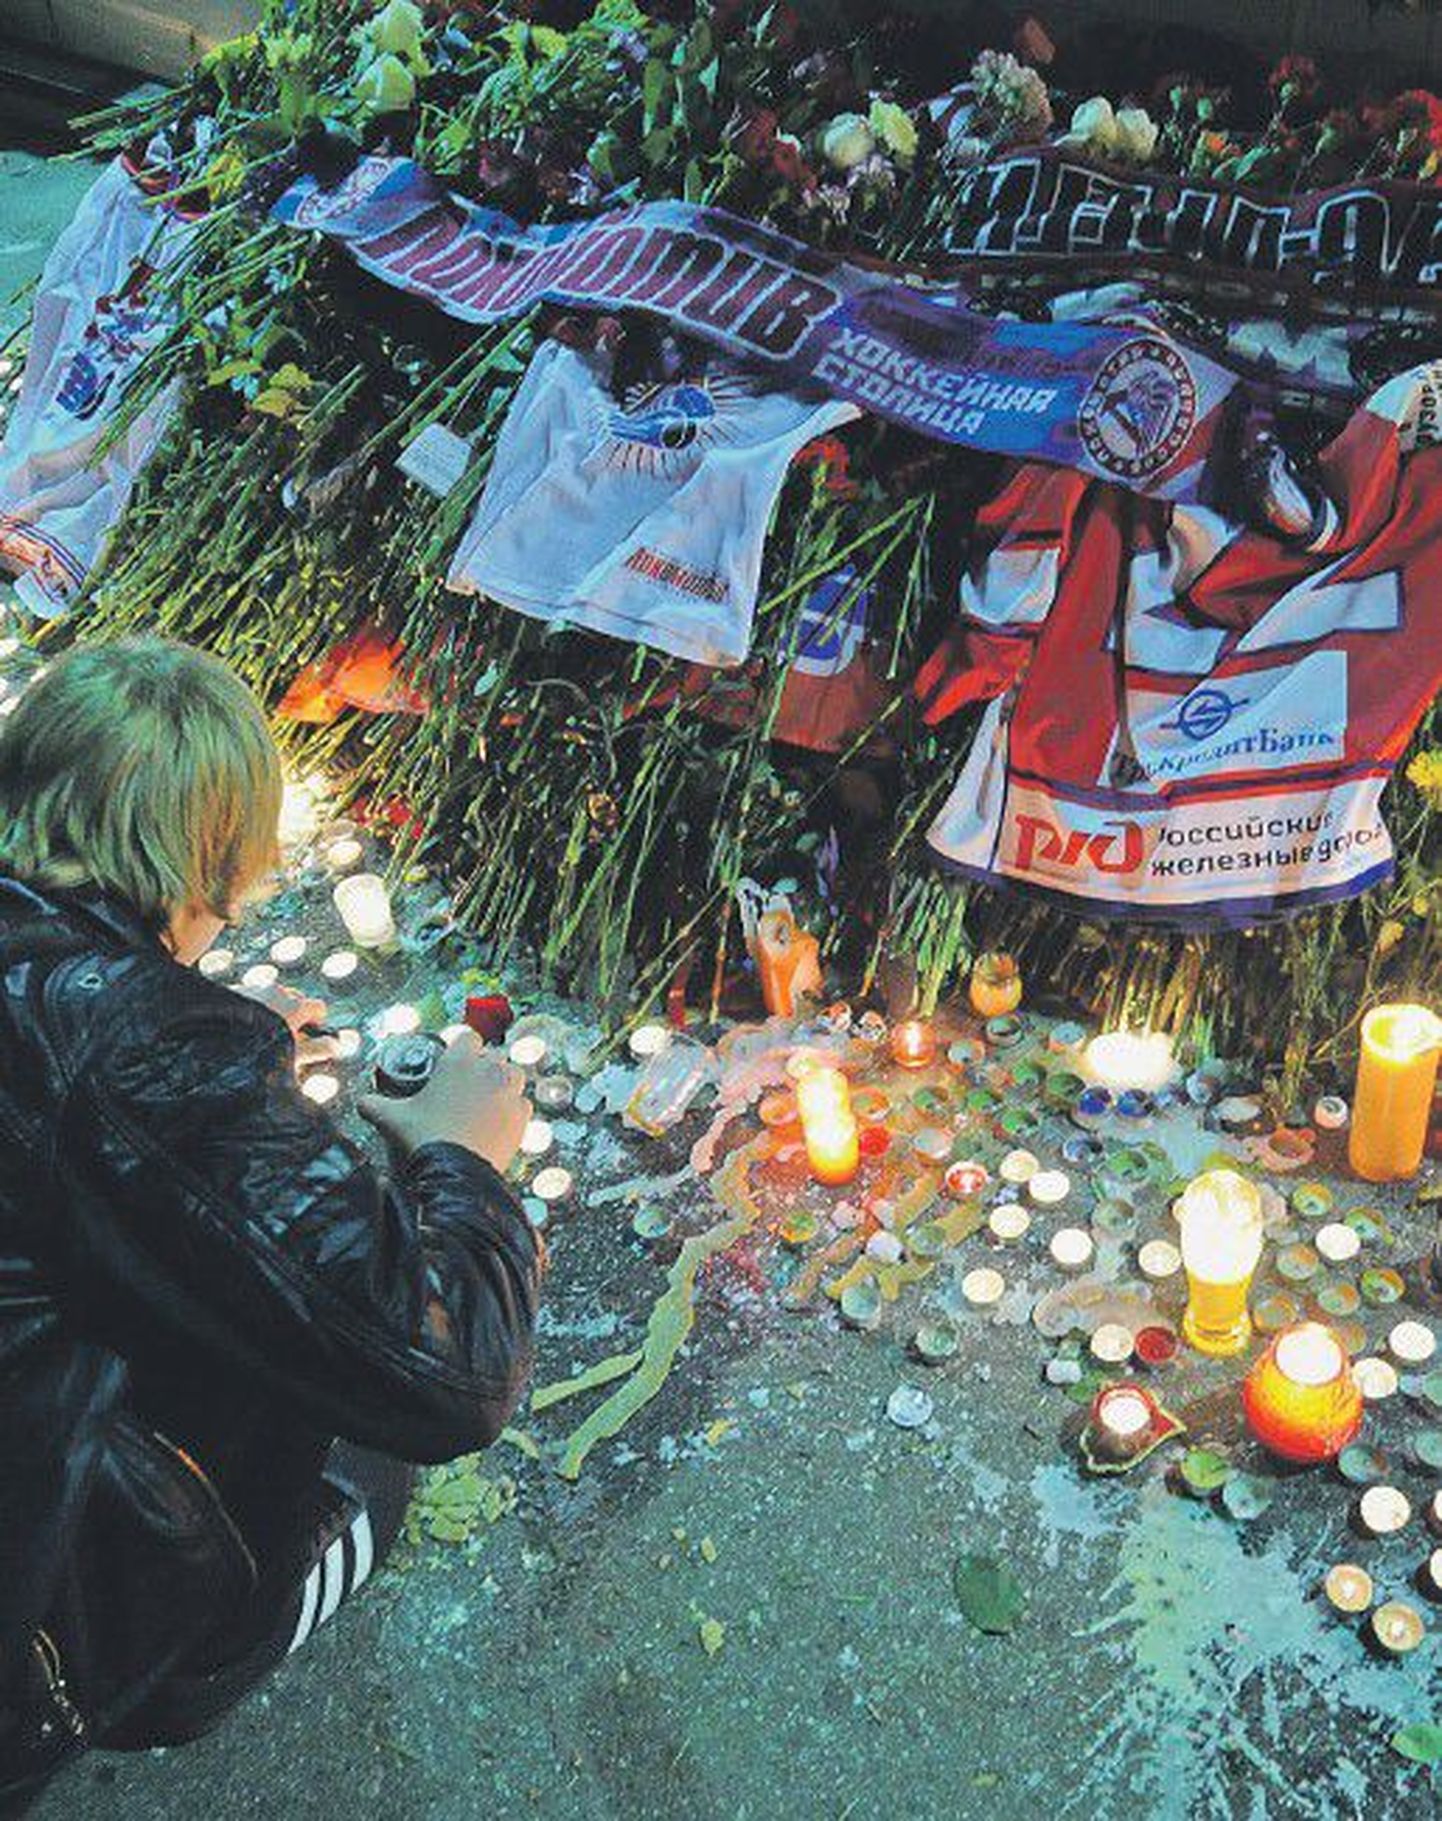 Цветы от болельщиков "Локомотива" и жителей Ярославля у спорткомплекса, где играла команда, в память о погибших хоккеистах.